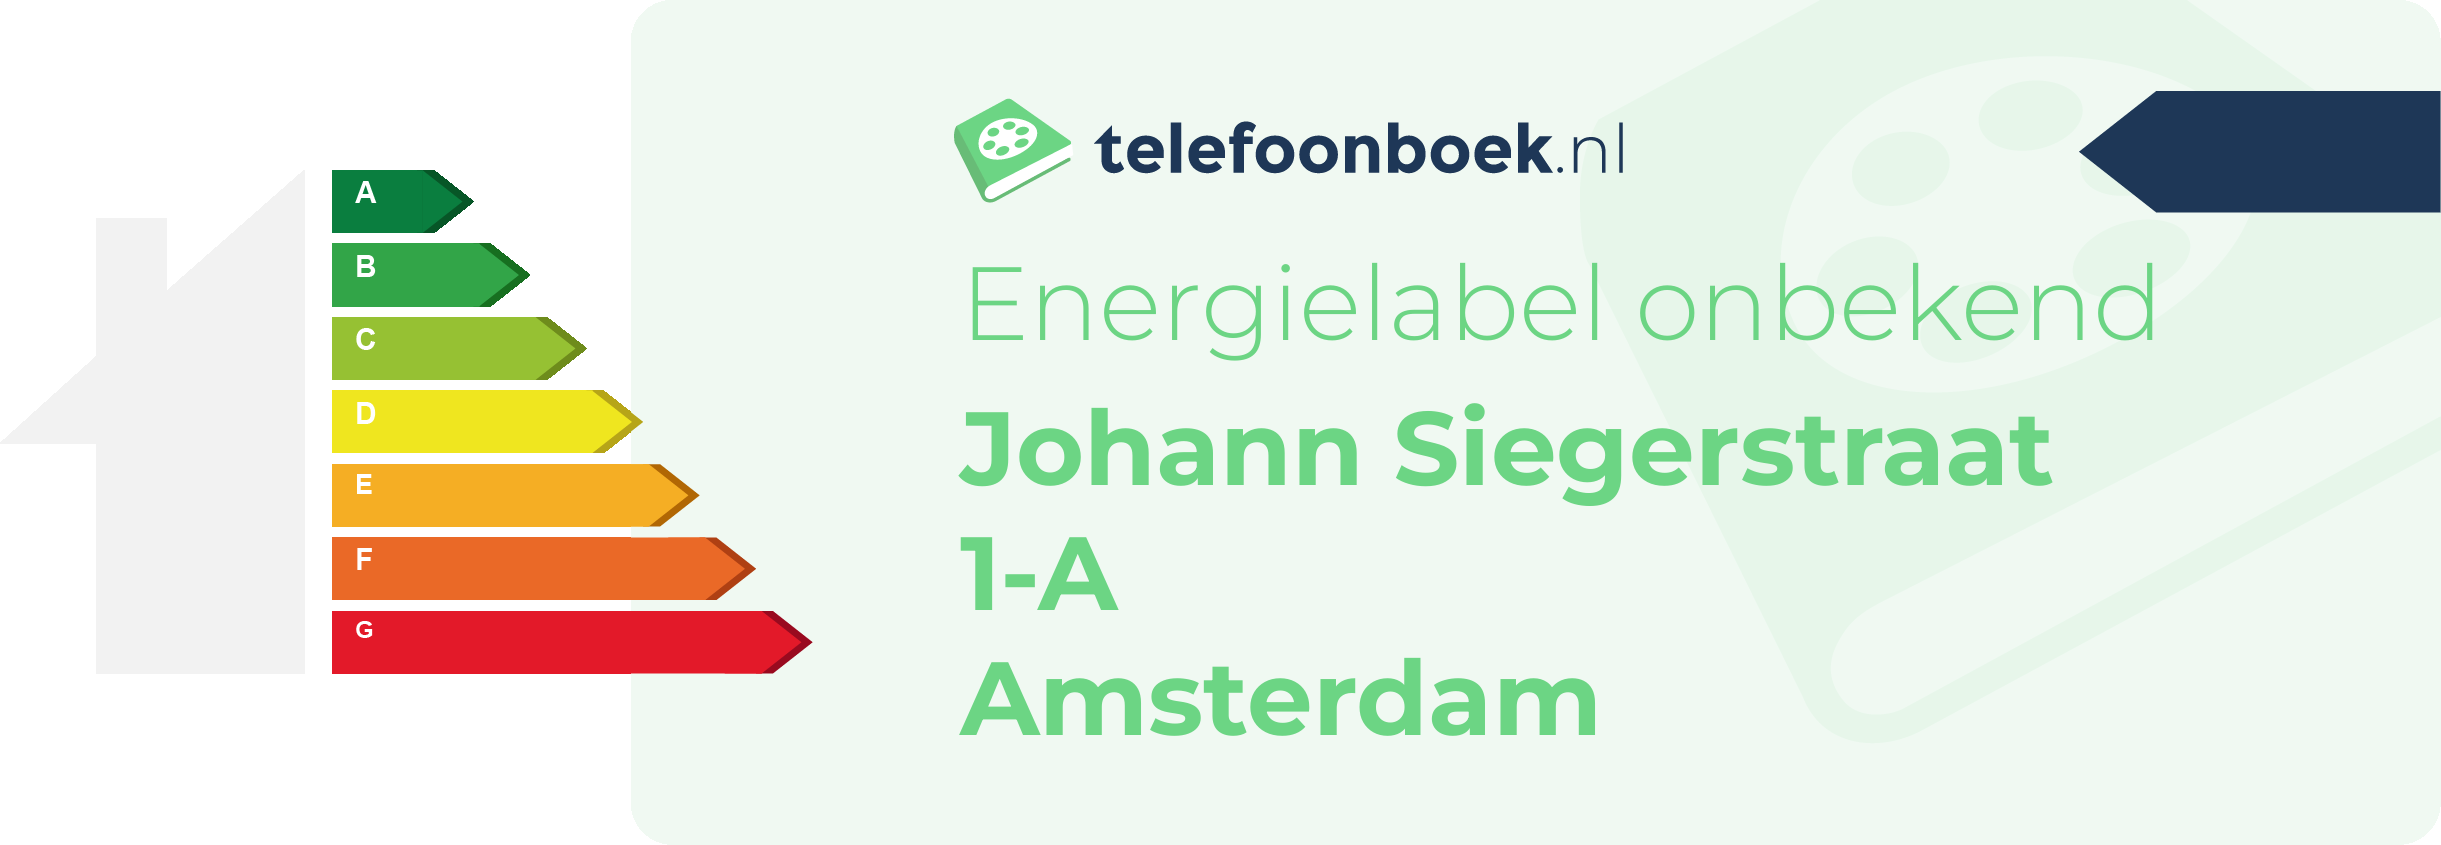 Energielabel Johann Siegerstraat 1-A Amsterdam